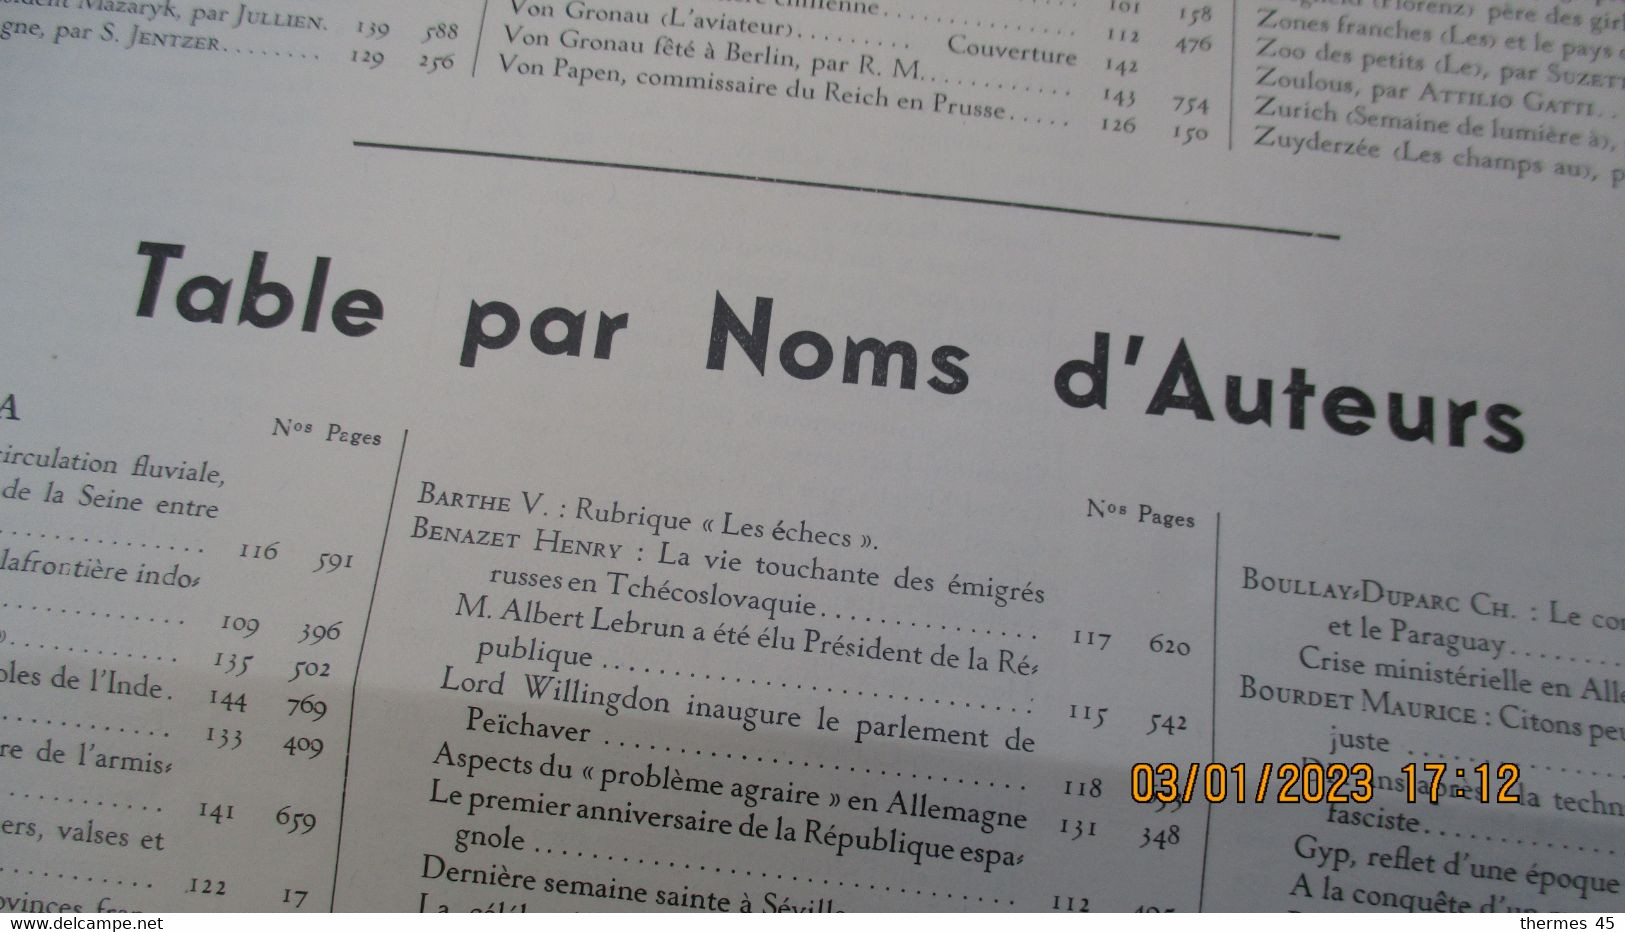 LE MIROIR Du MONDE Suppl. Au N°153 / TABLE ANALYTHIQUE Des MATIERES - General Issues